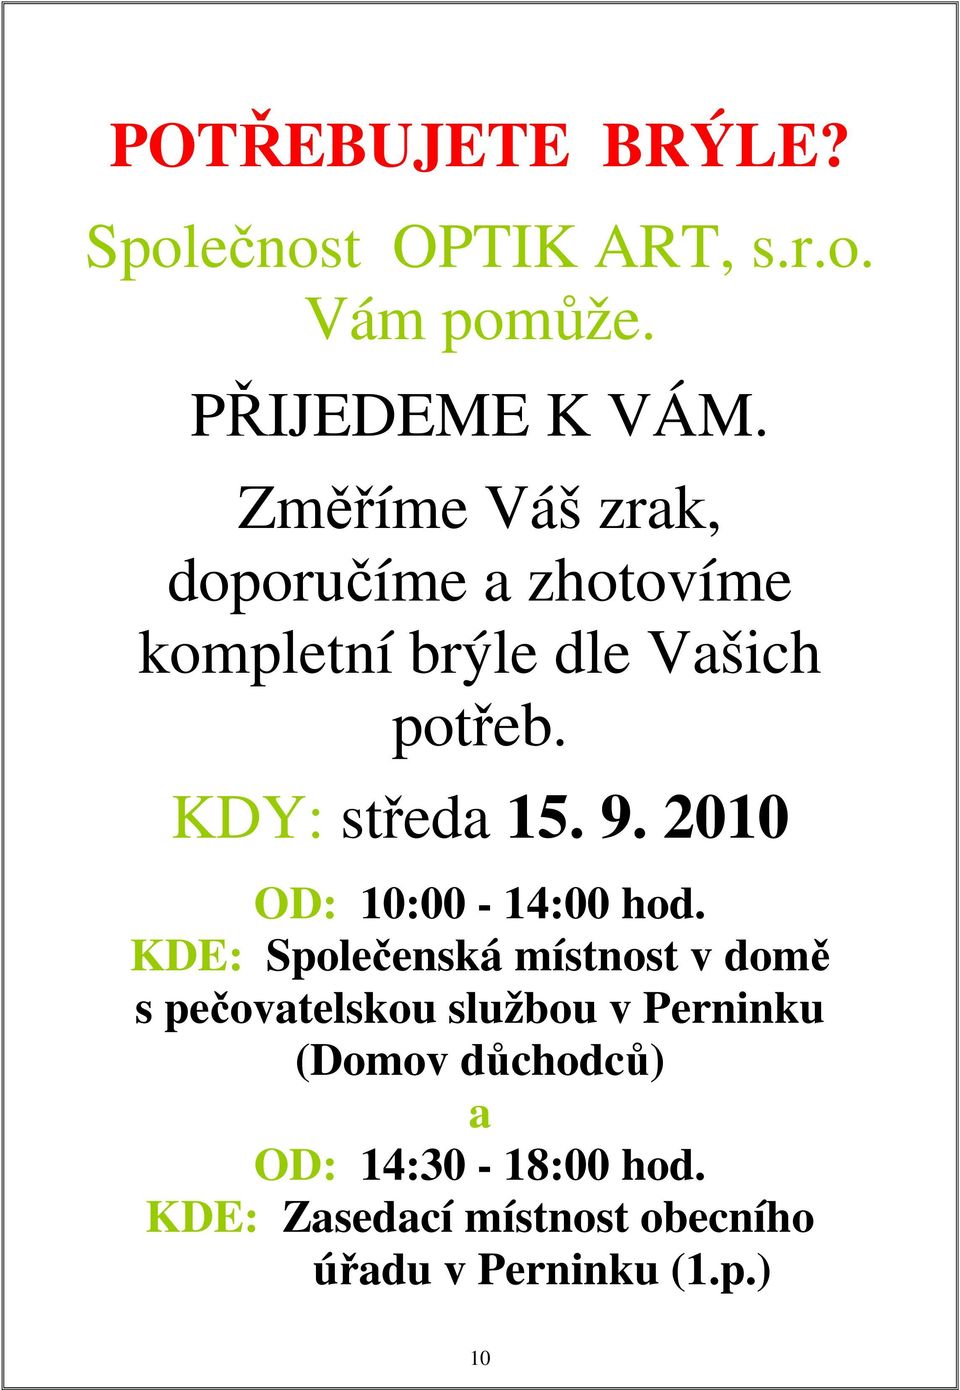 9. 2010 OD: 10:00-14:00 hod.